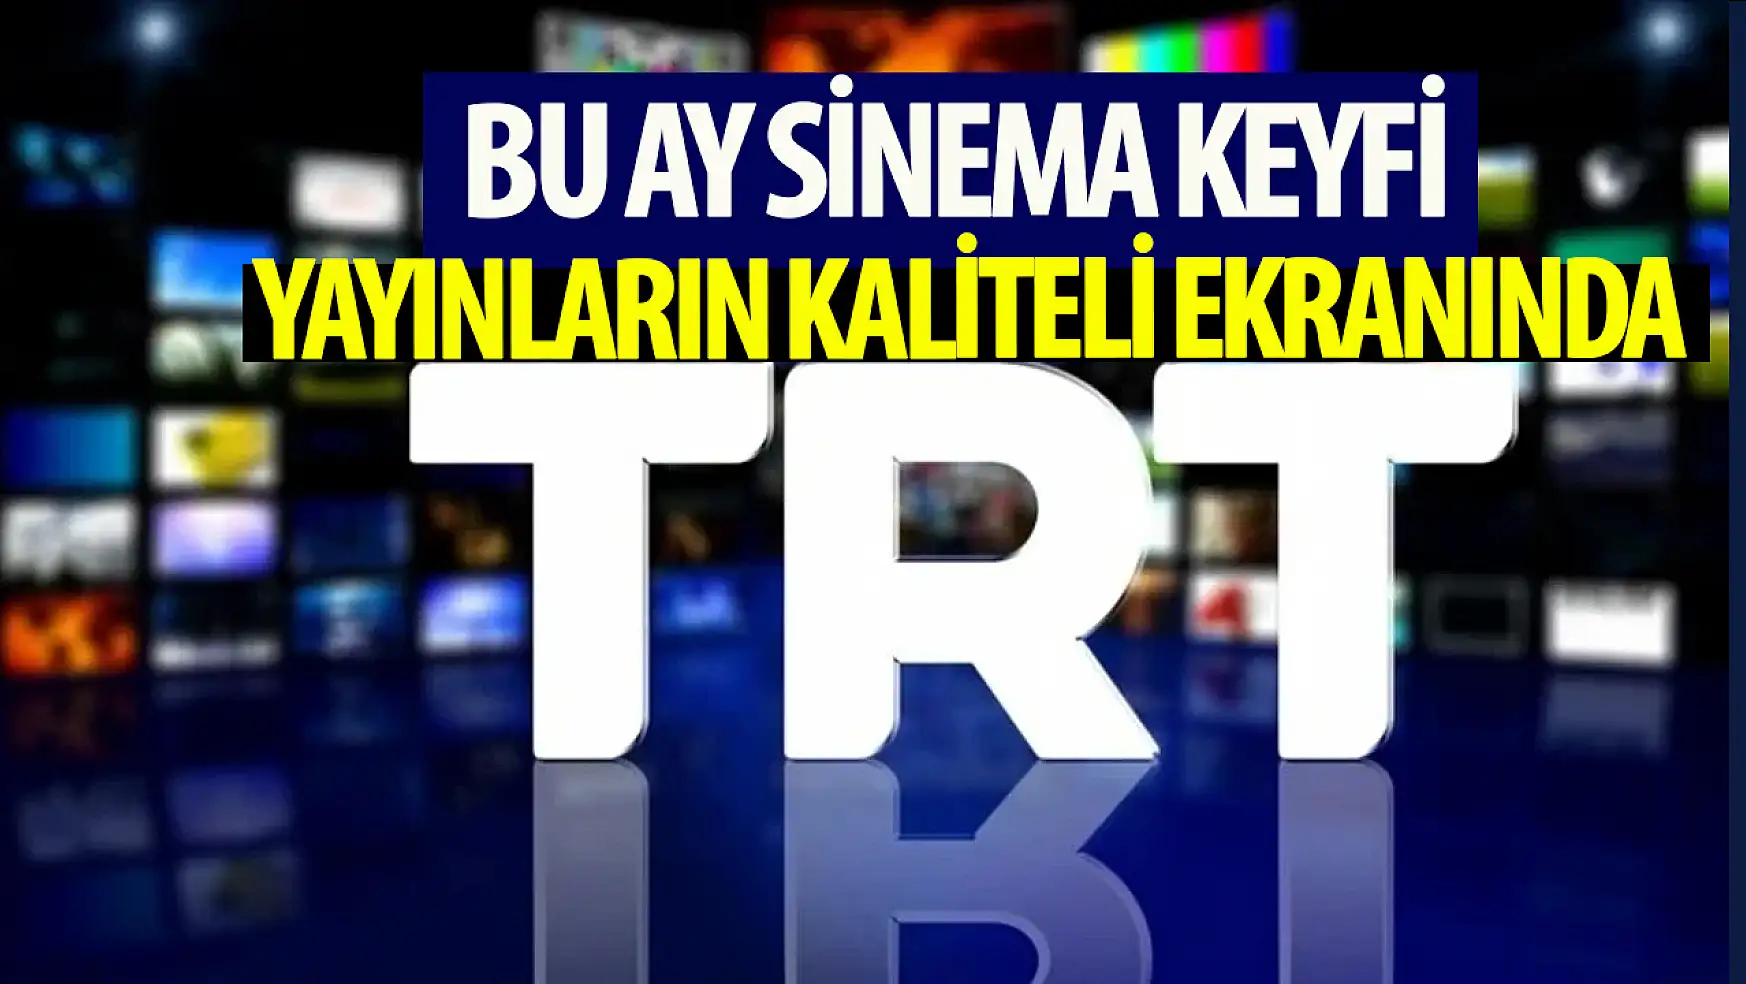 TRT 2, Nisan ayı boyunca sinema keyfi sunacak